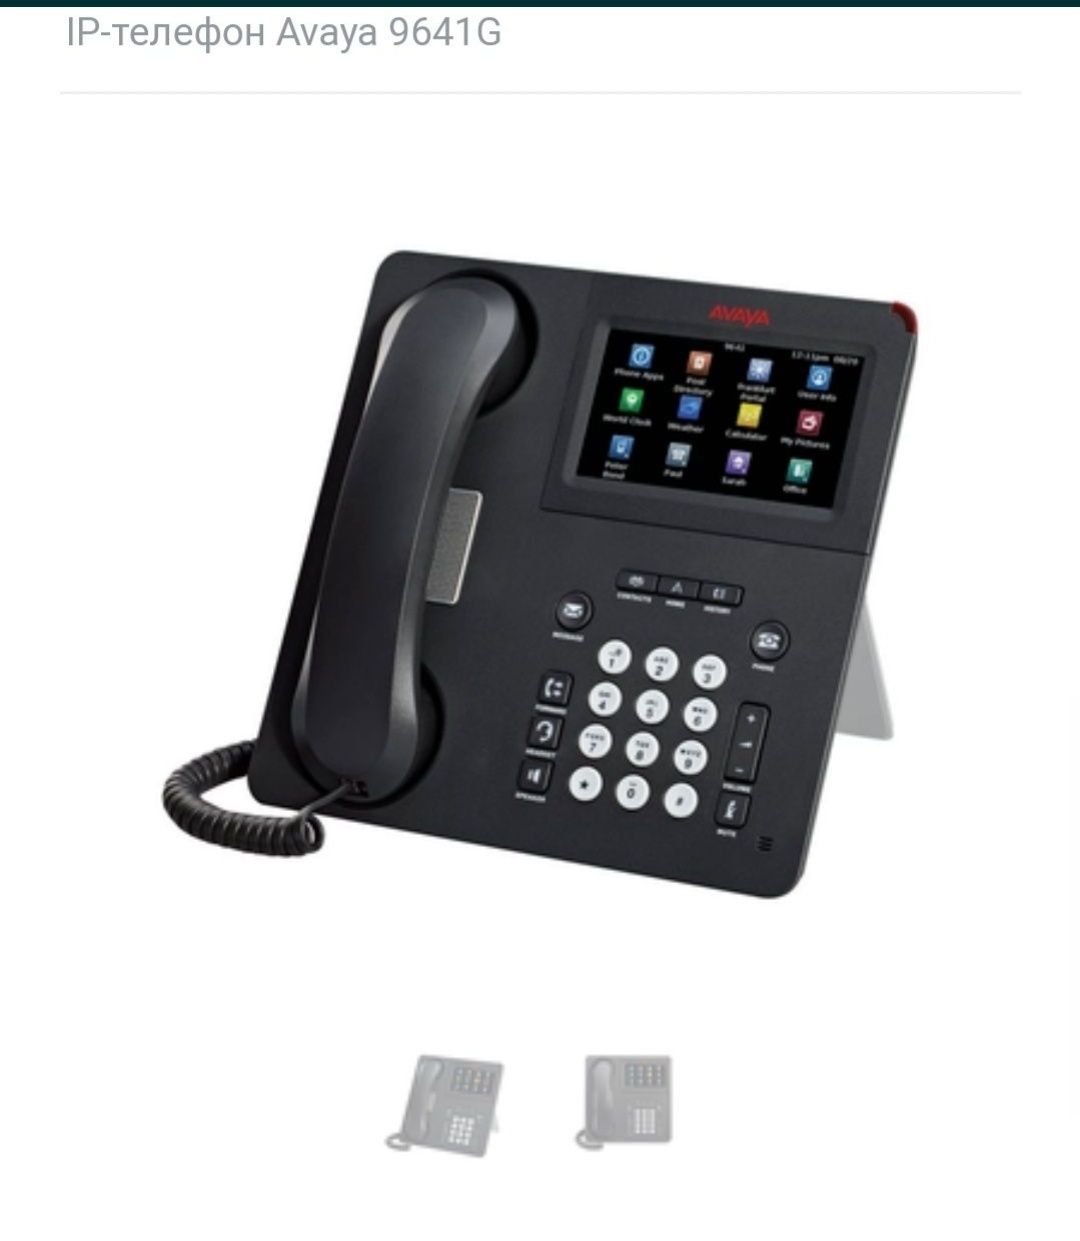 IP-Телефон Avaya 9641g.